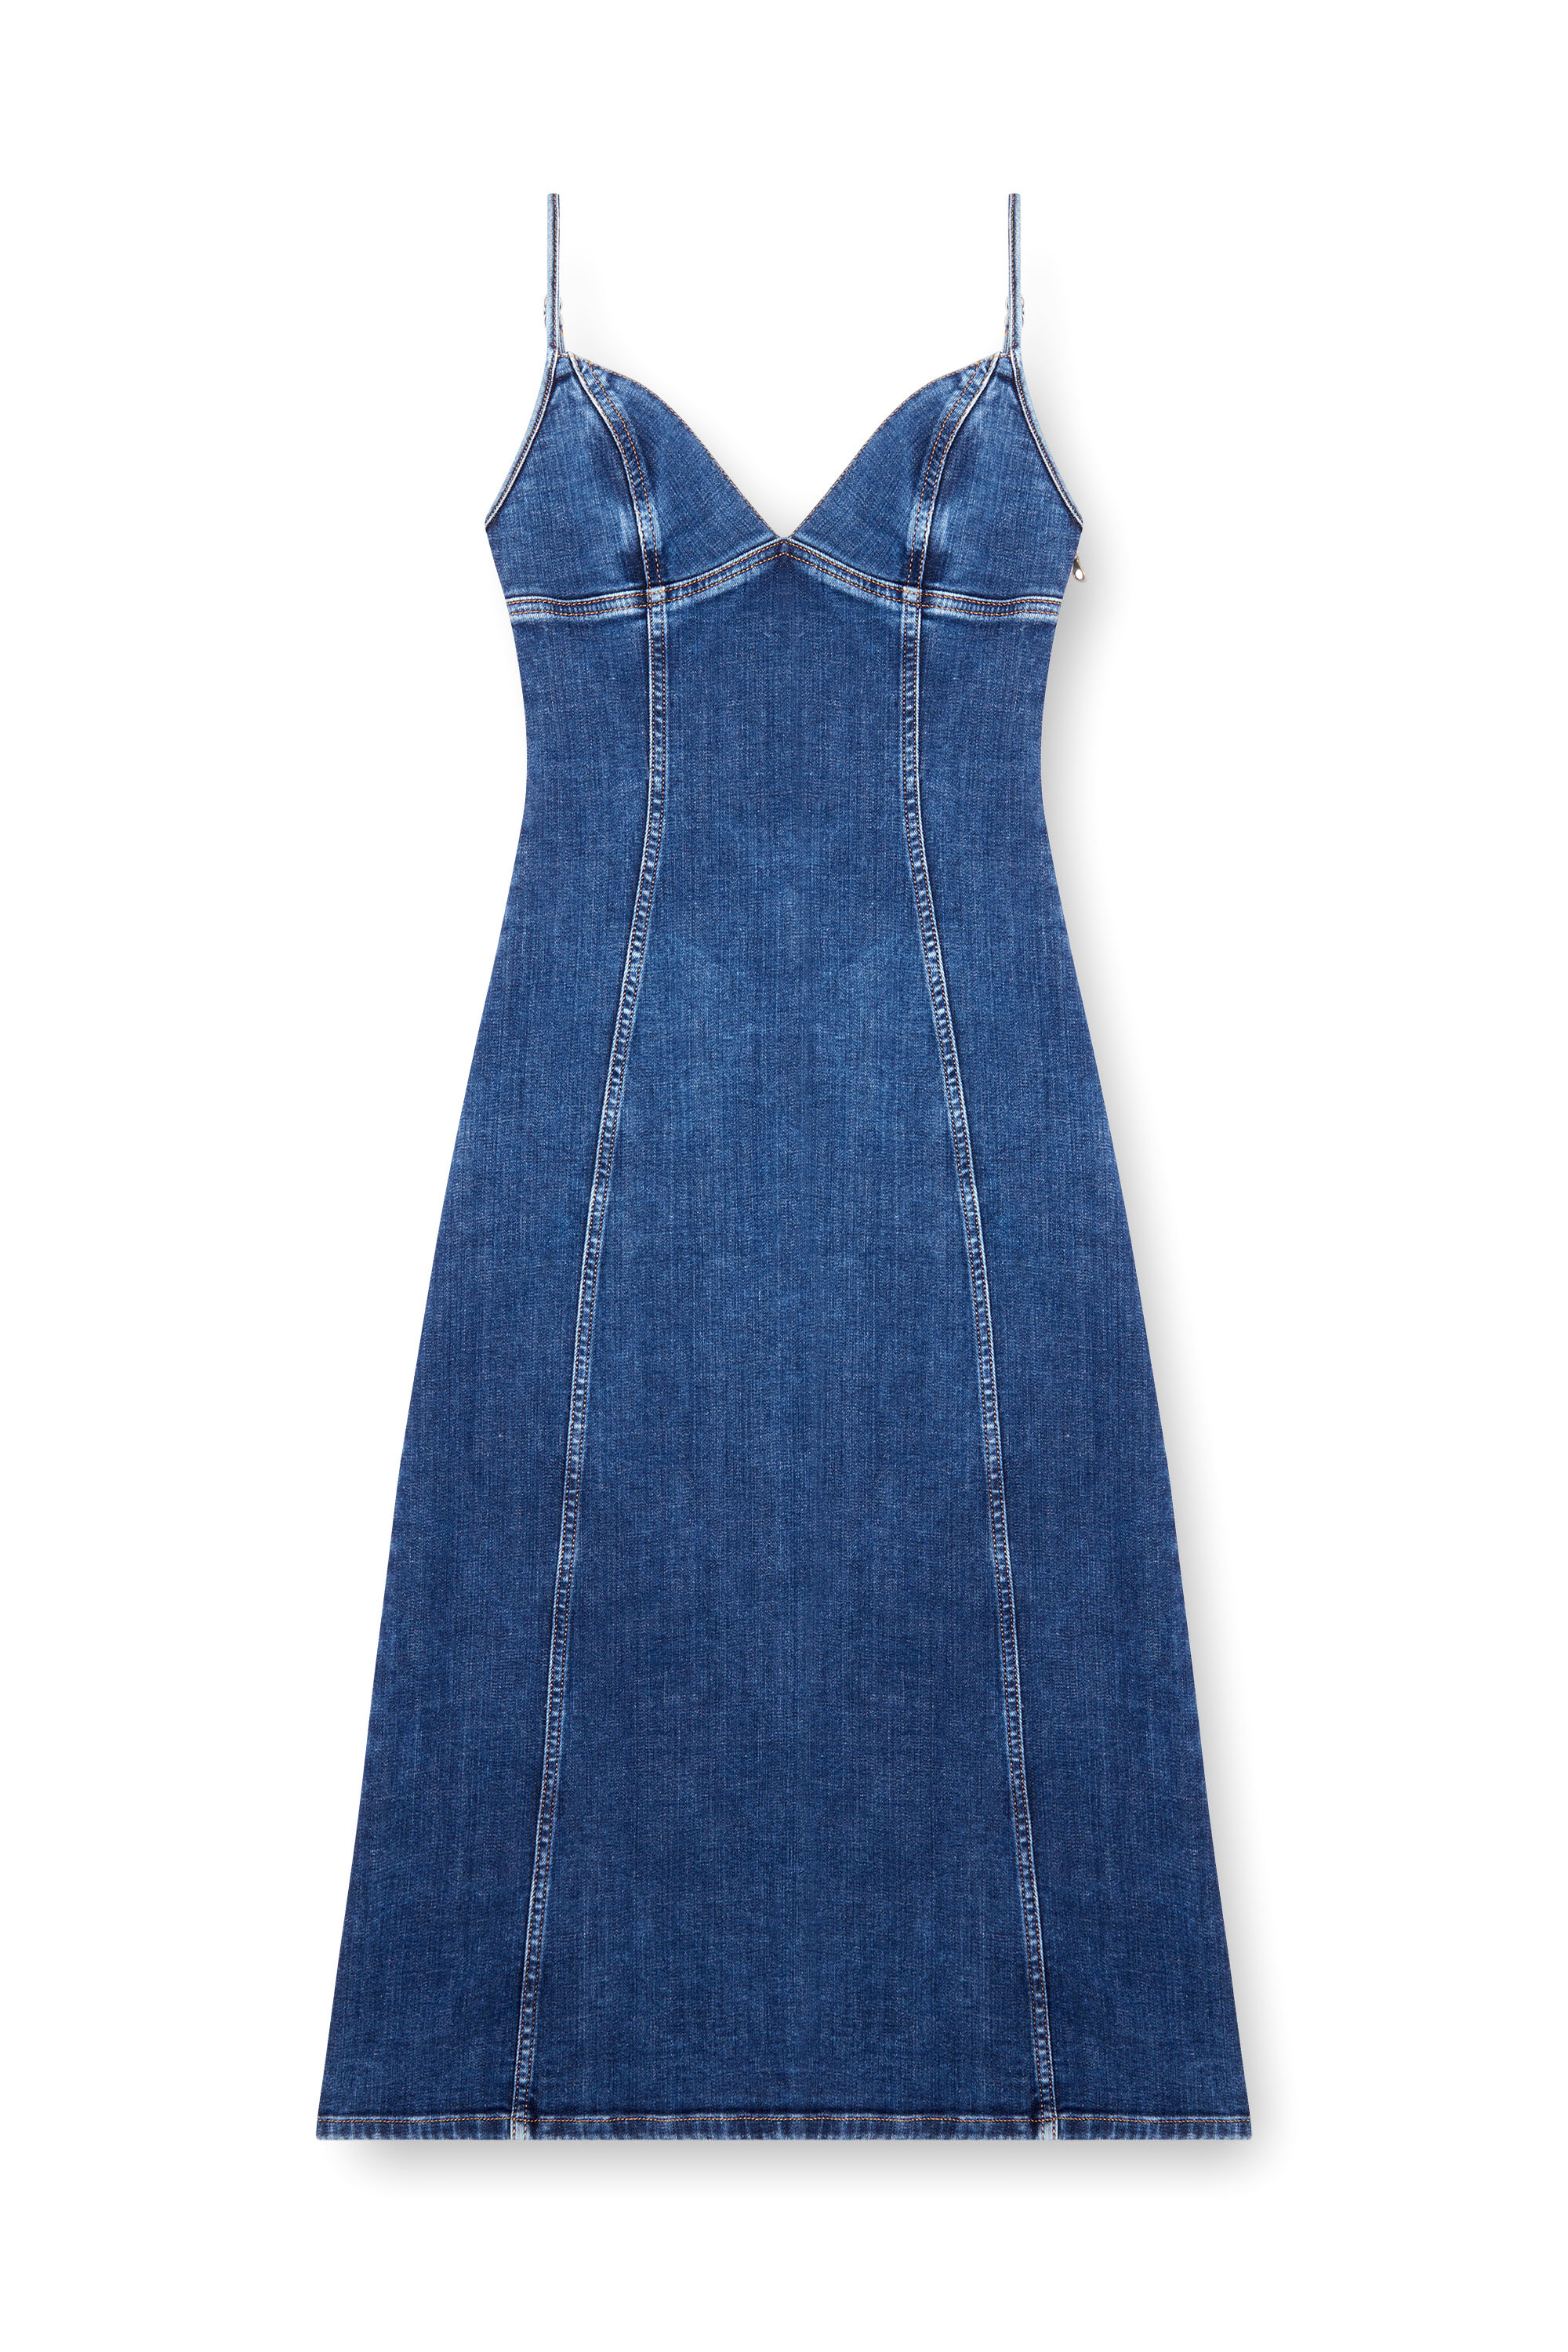 Diesel - DE-FULVY-DRESS-D, Mujer Vestido midi de tirantes en denim in Azul marino - Image 4